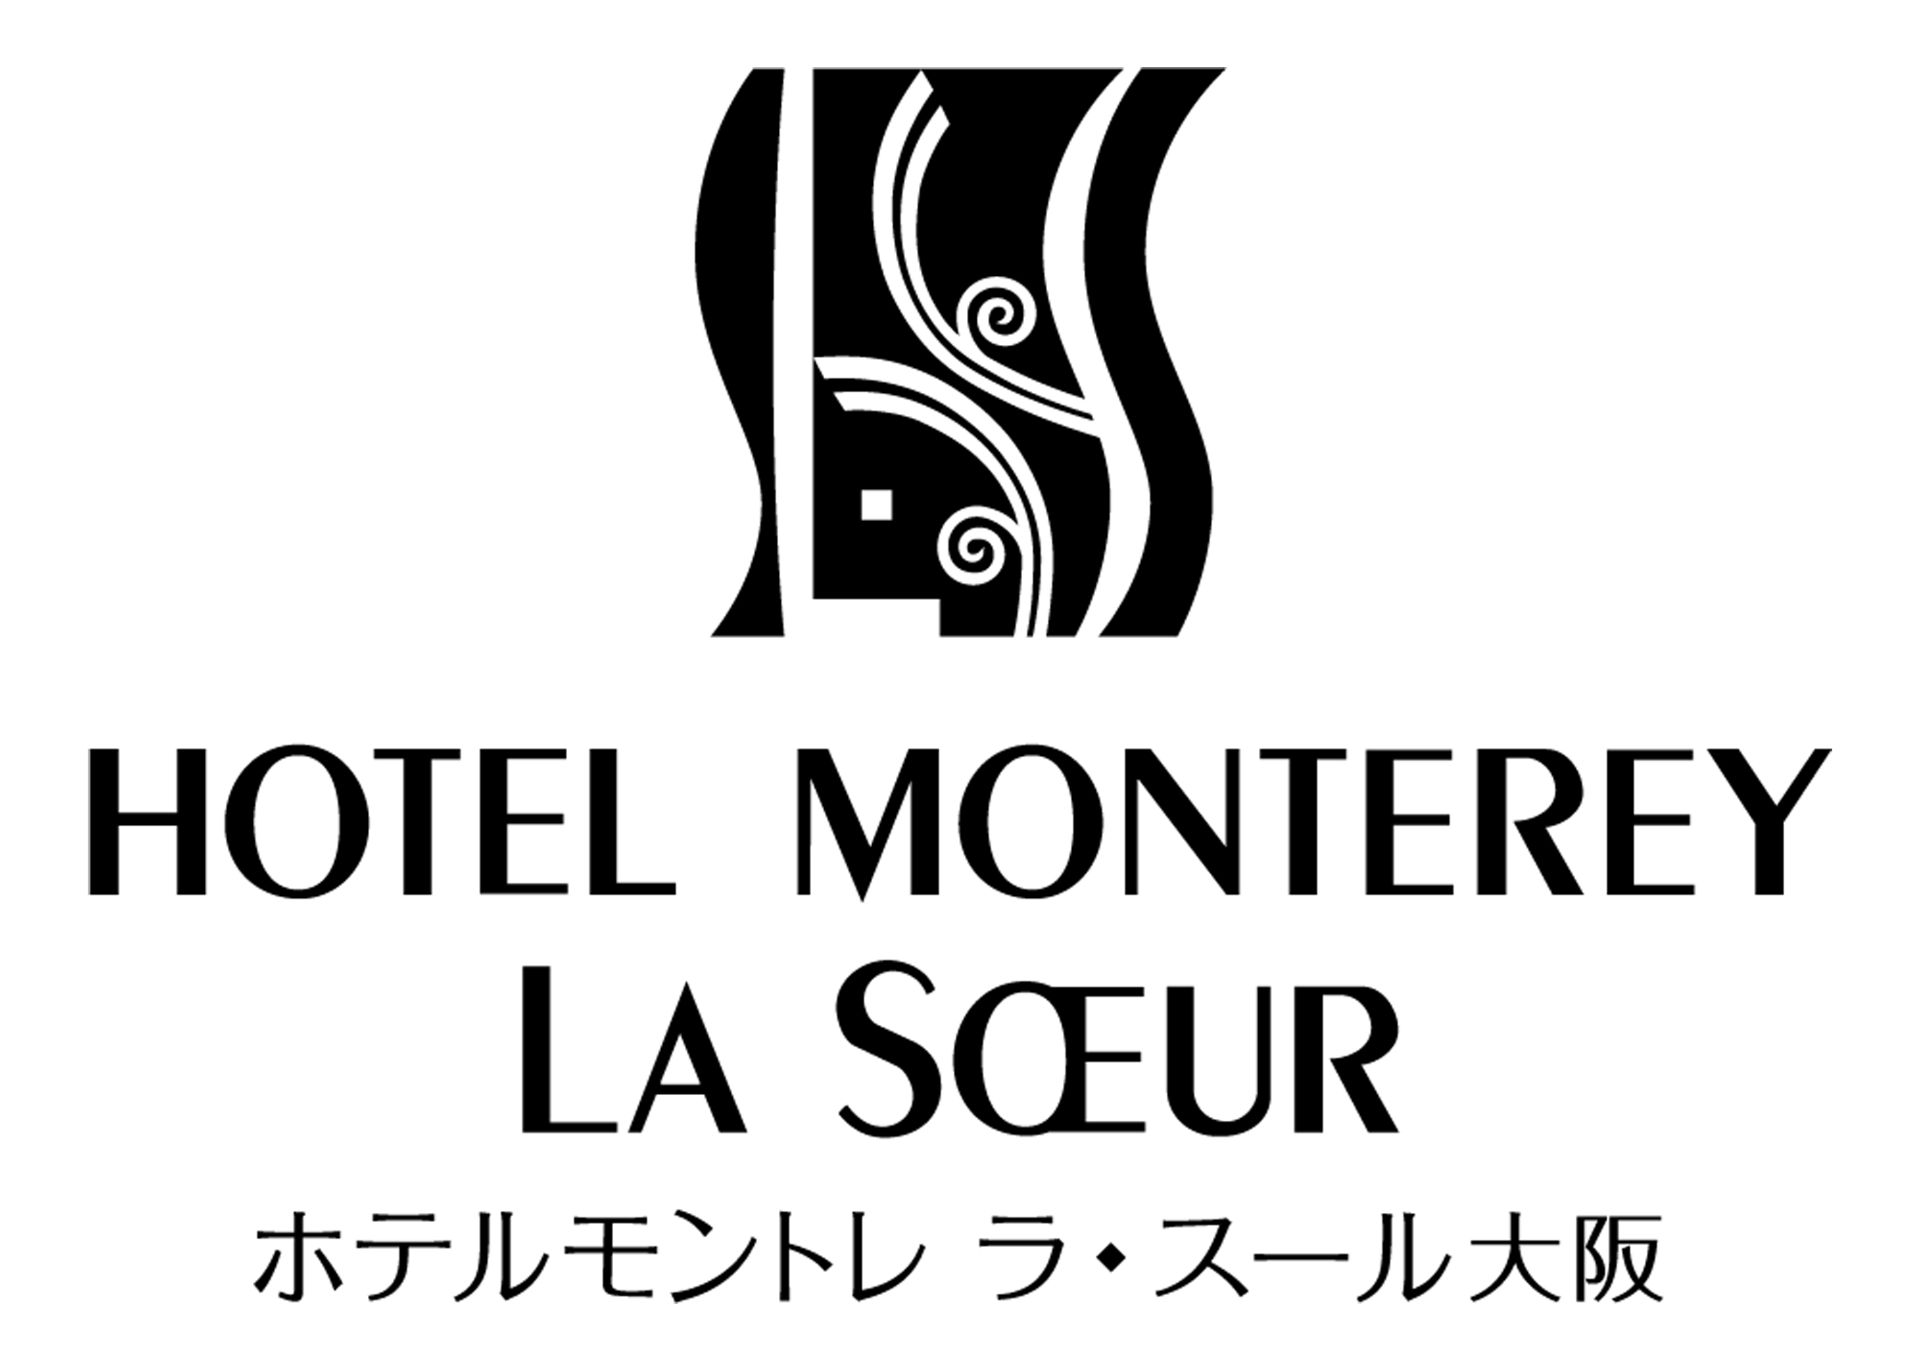 ホテルモントレ ラ・スール大阪